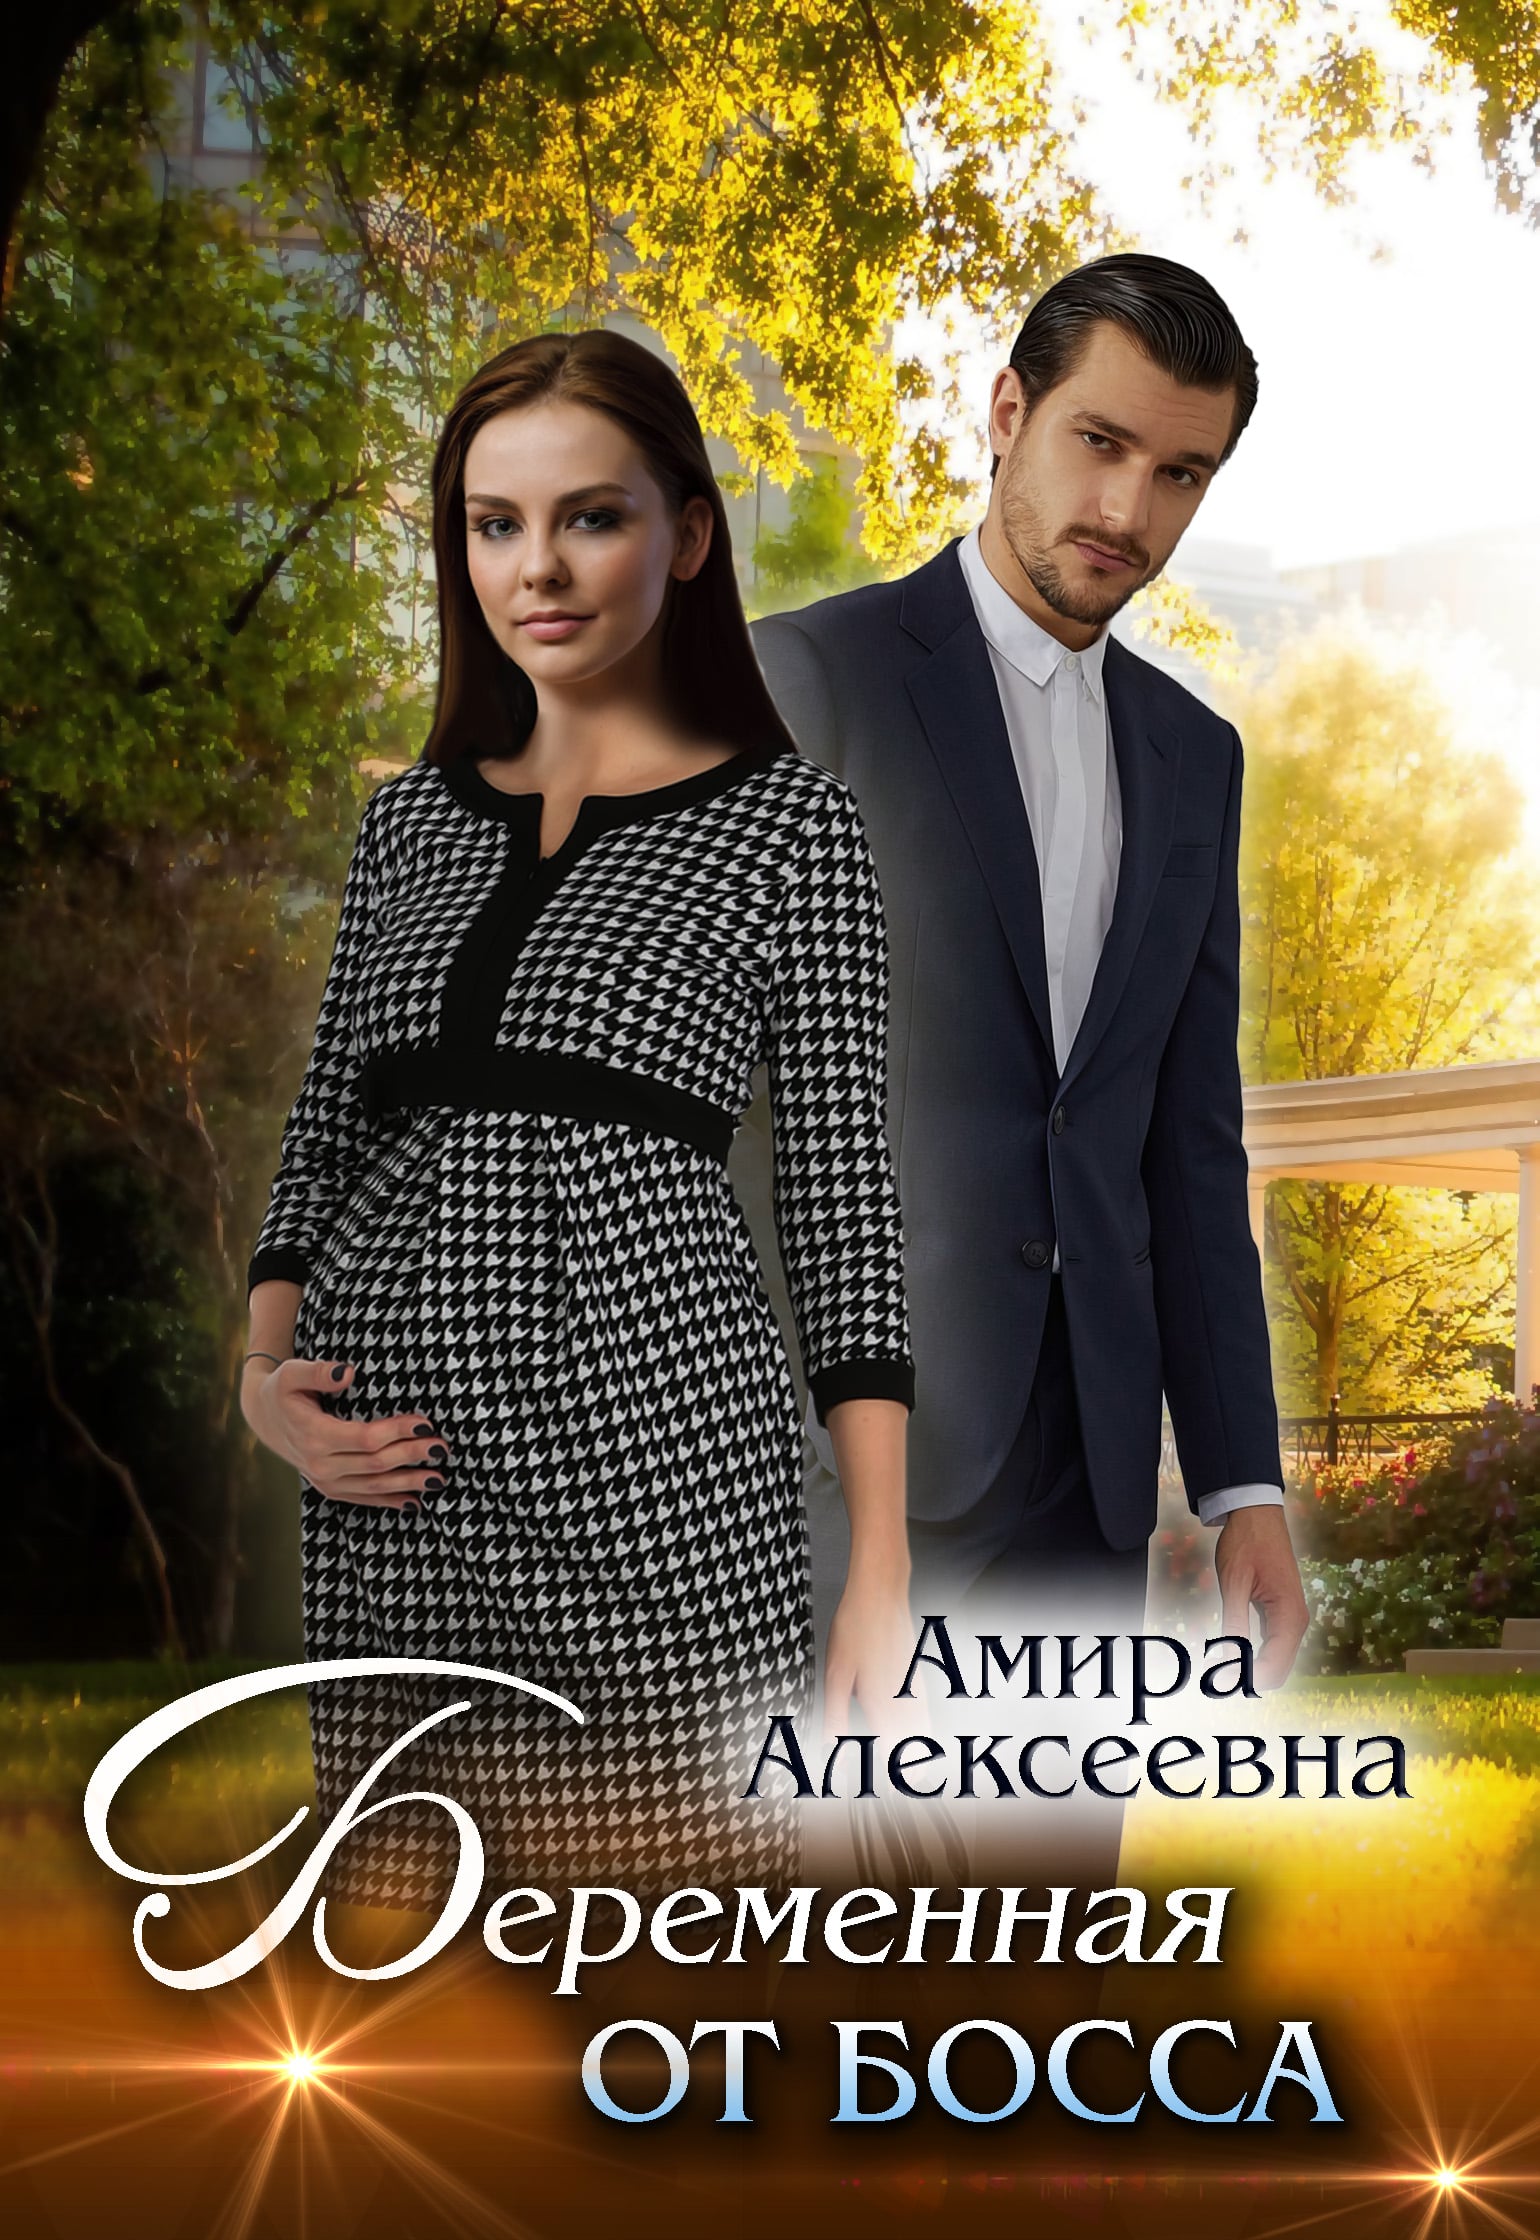 Книга беременна от босса. Книги для беременных. Любовные романы Некрасова.